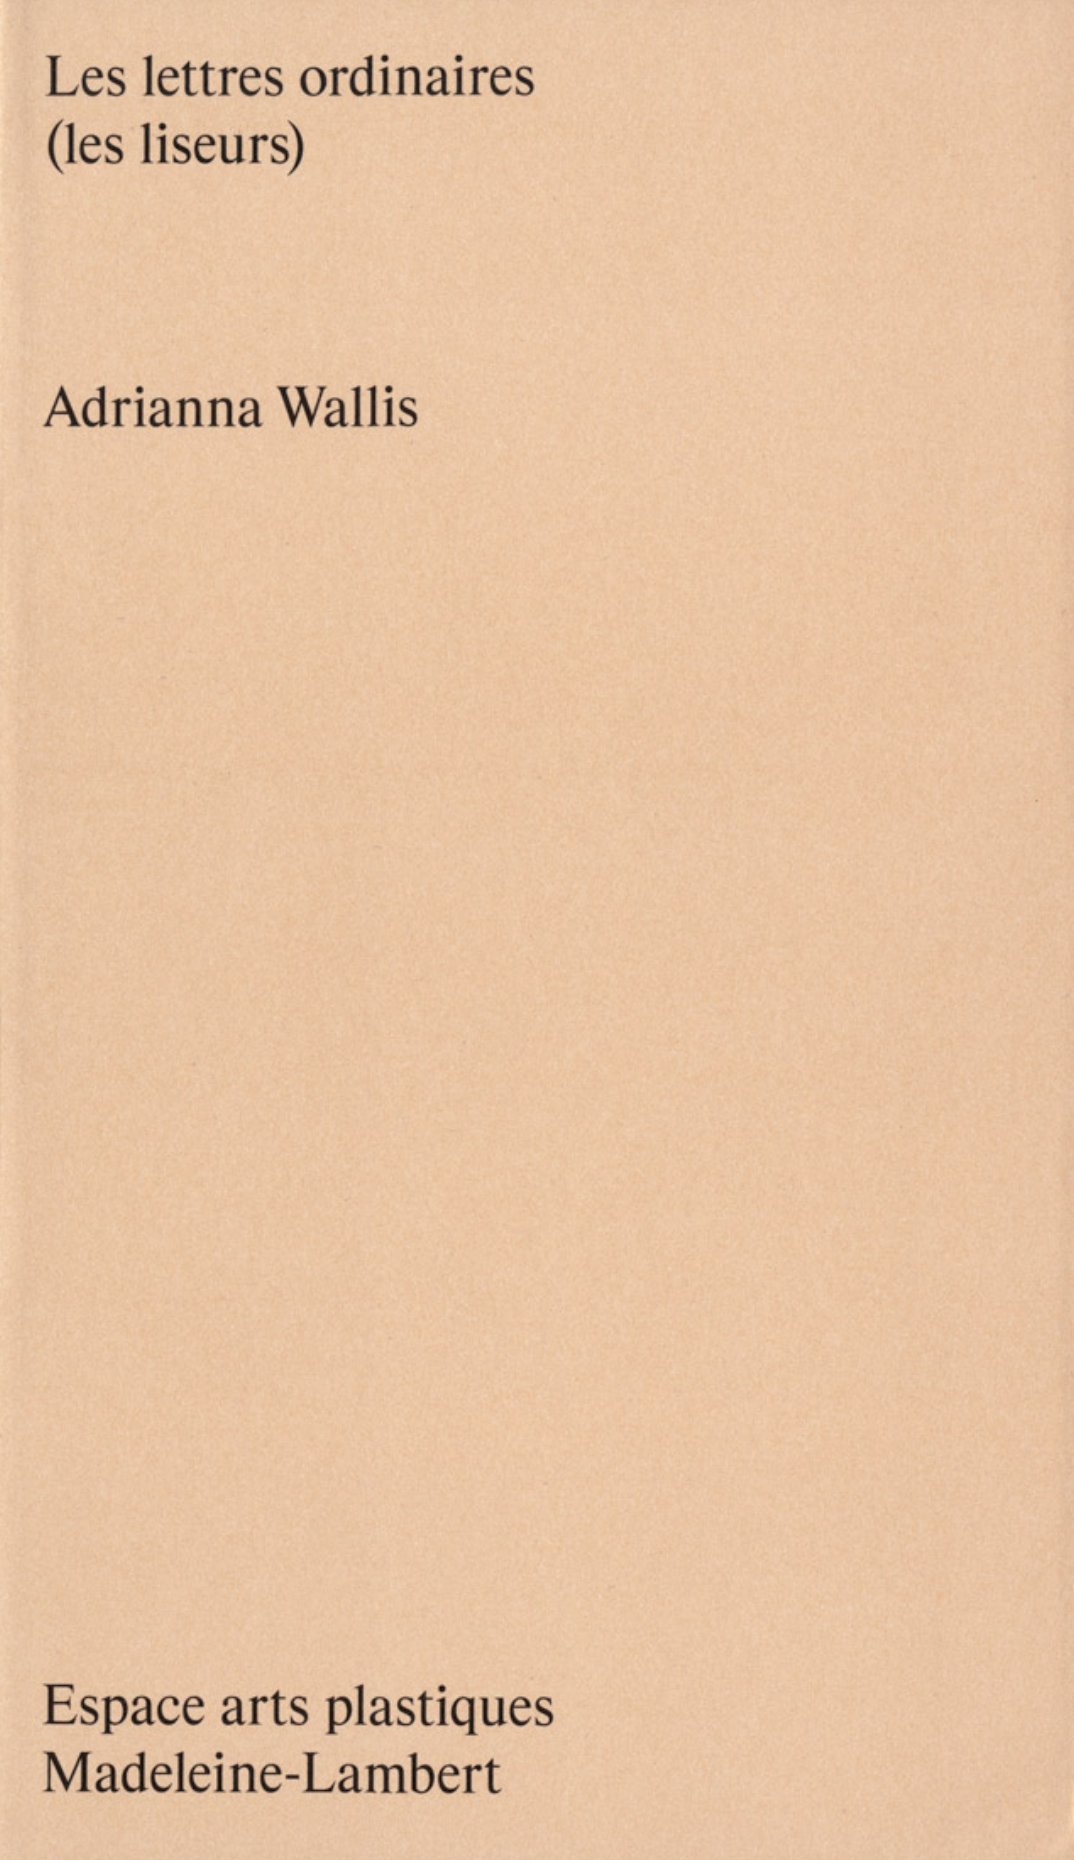 Adrianna Wallis - Les lettres ordinaires (les liseurs)